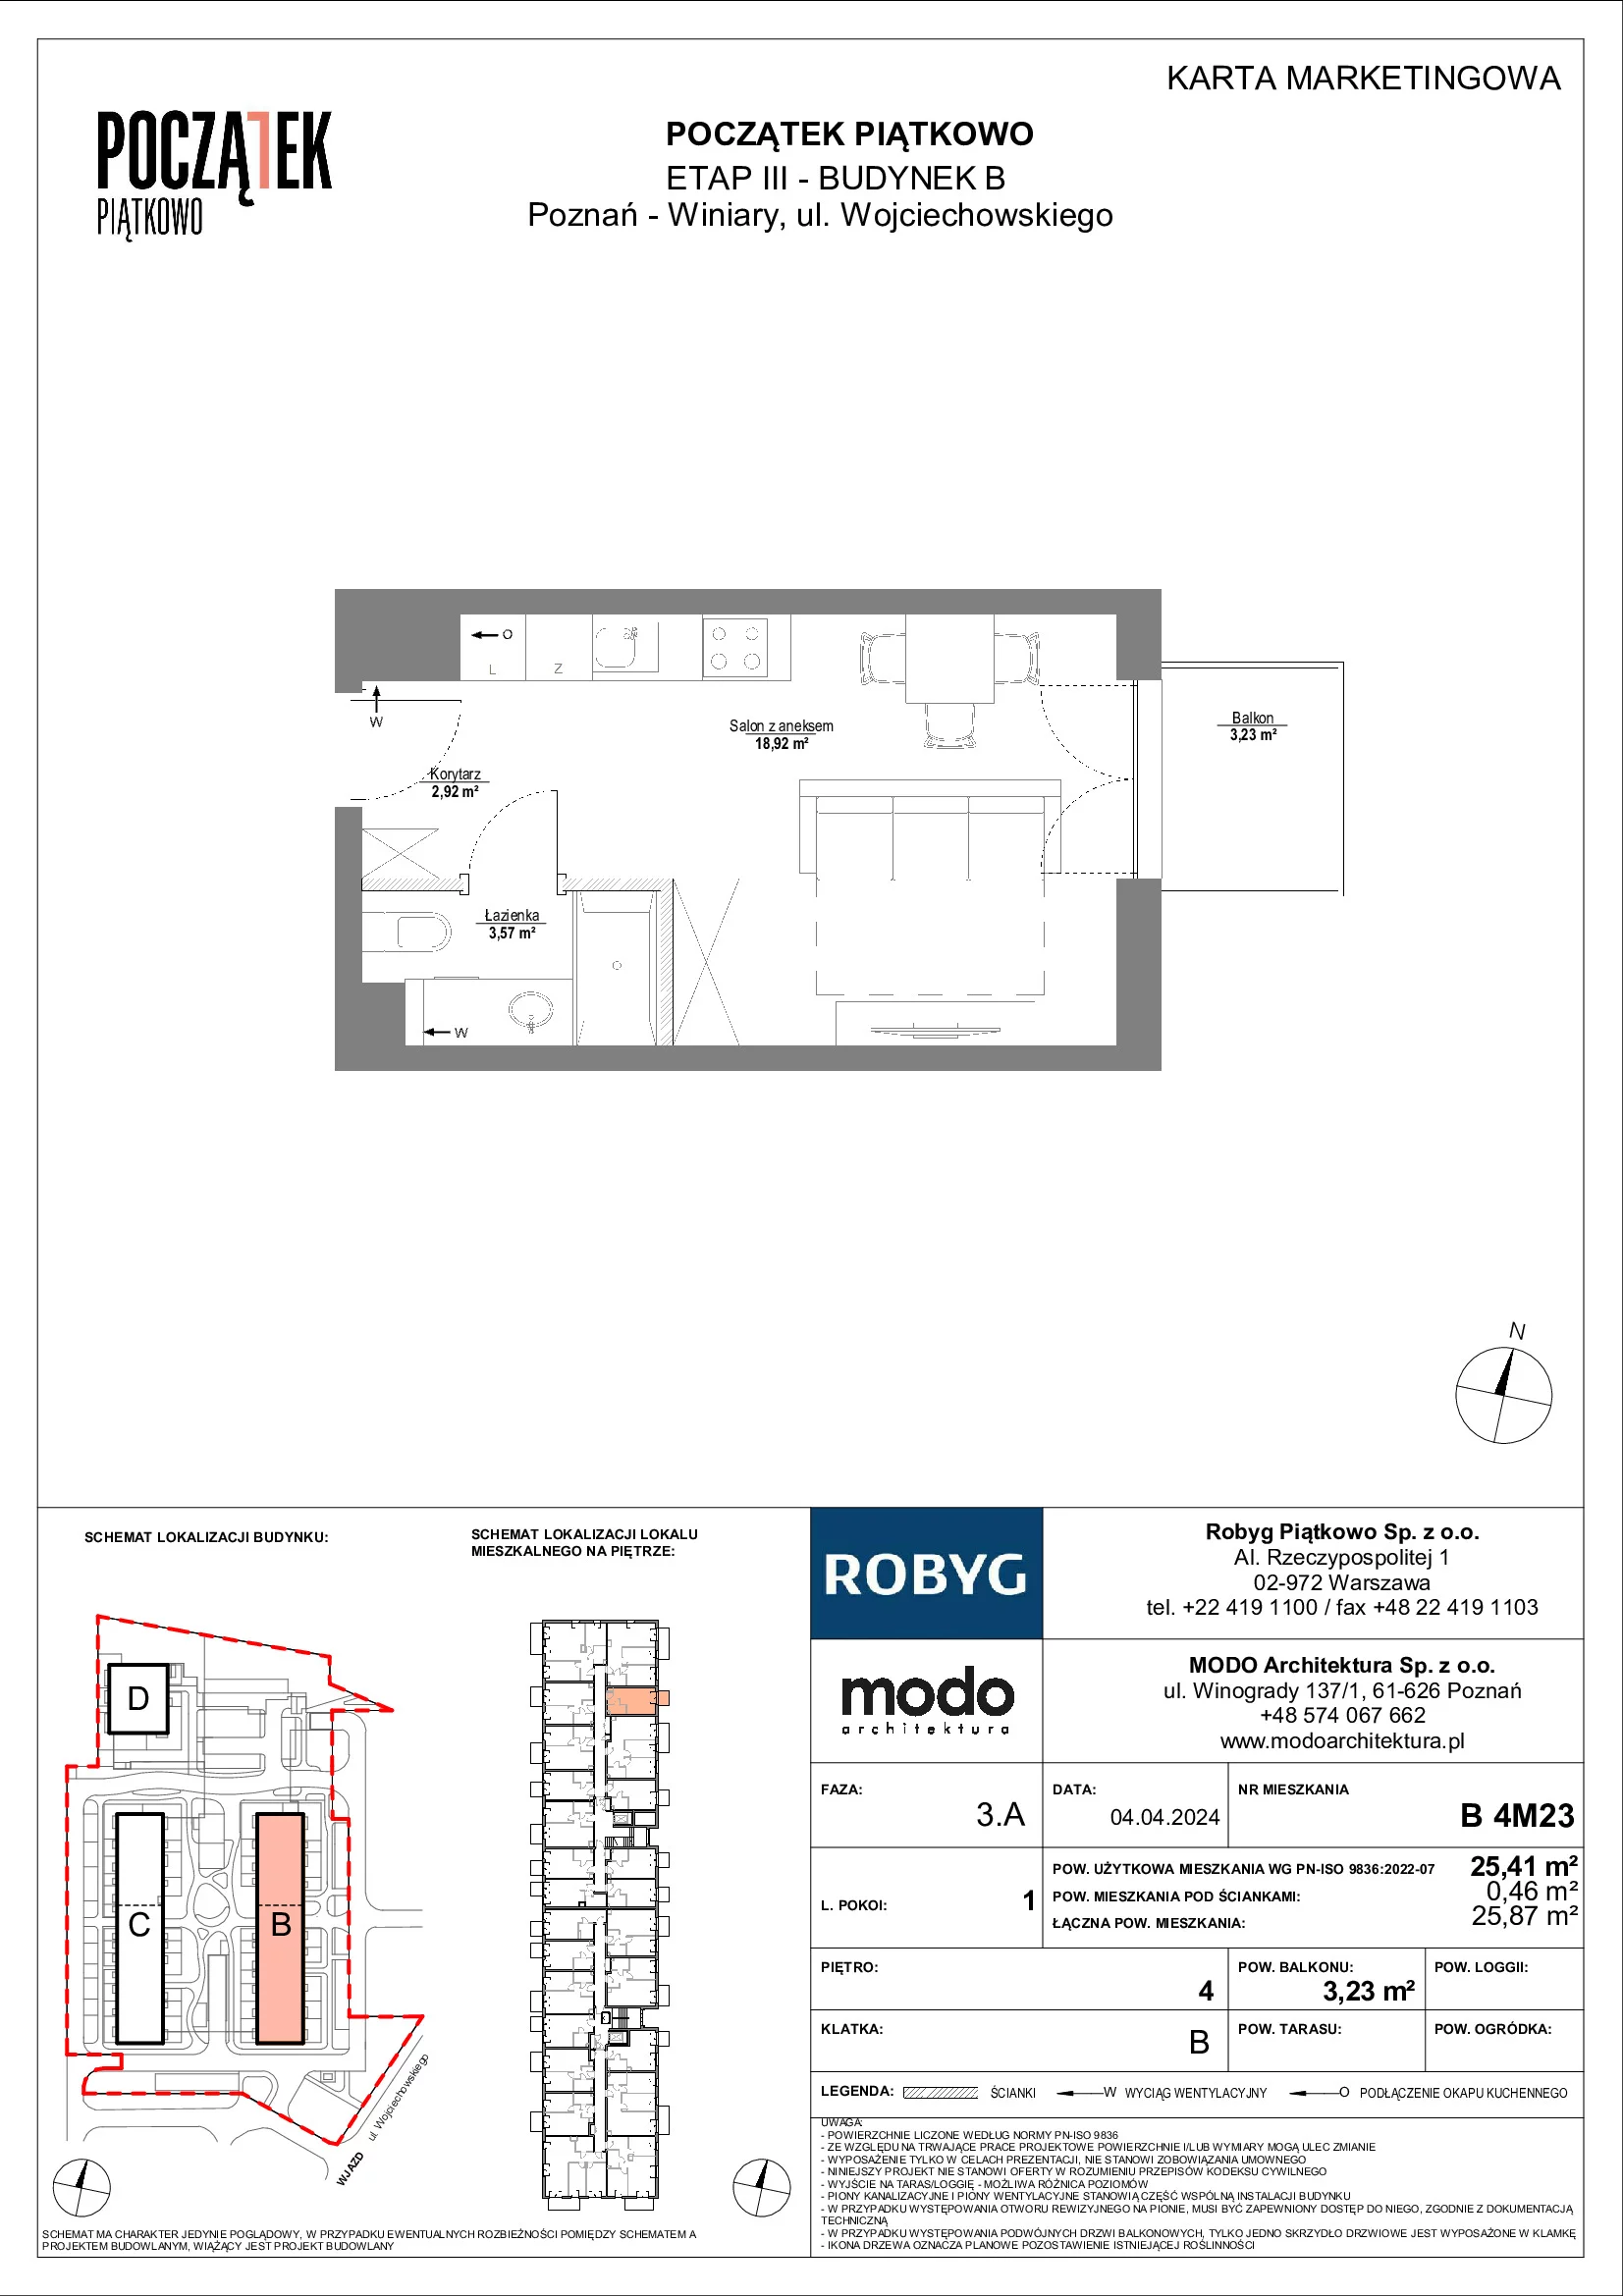 Mieszkanie 25,41 m², piętro 4, oferta nr B.4M23, Początek Piątkowo, Poznań, Piątkowo, ul. Wojciechowskiego